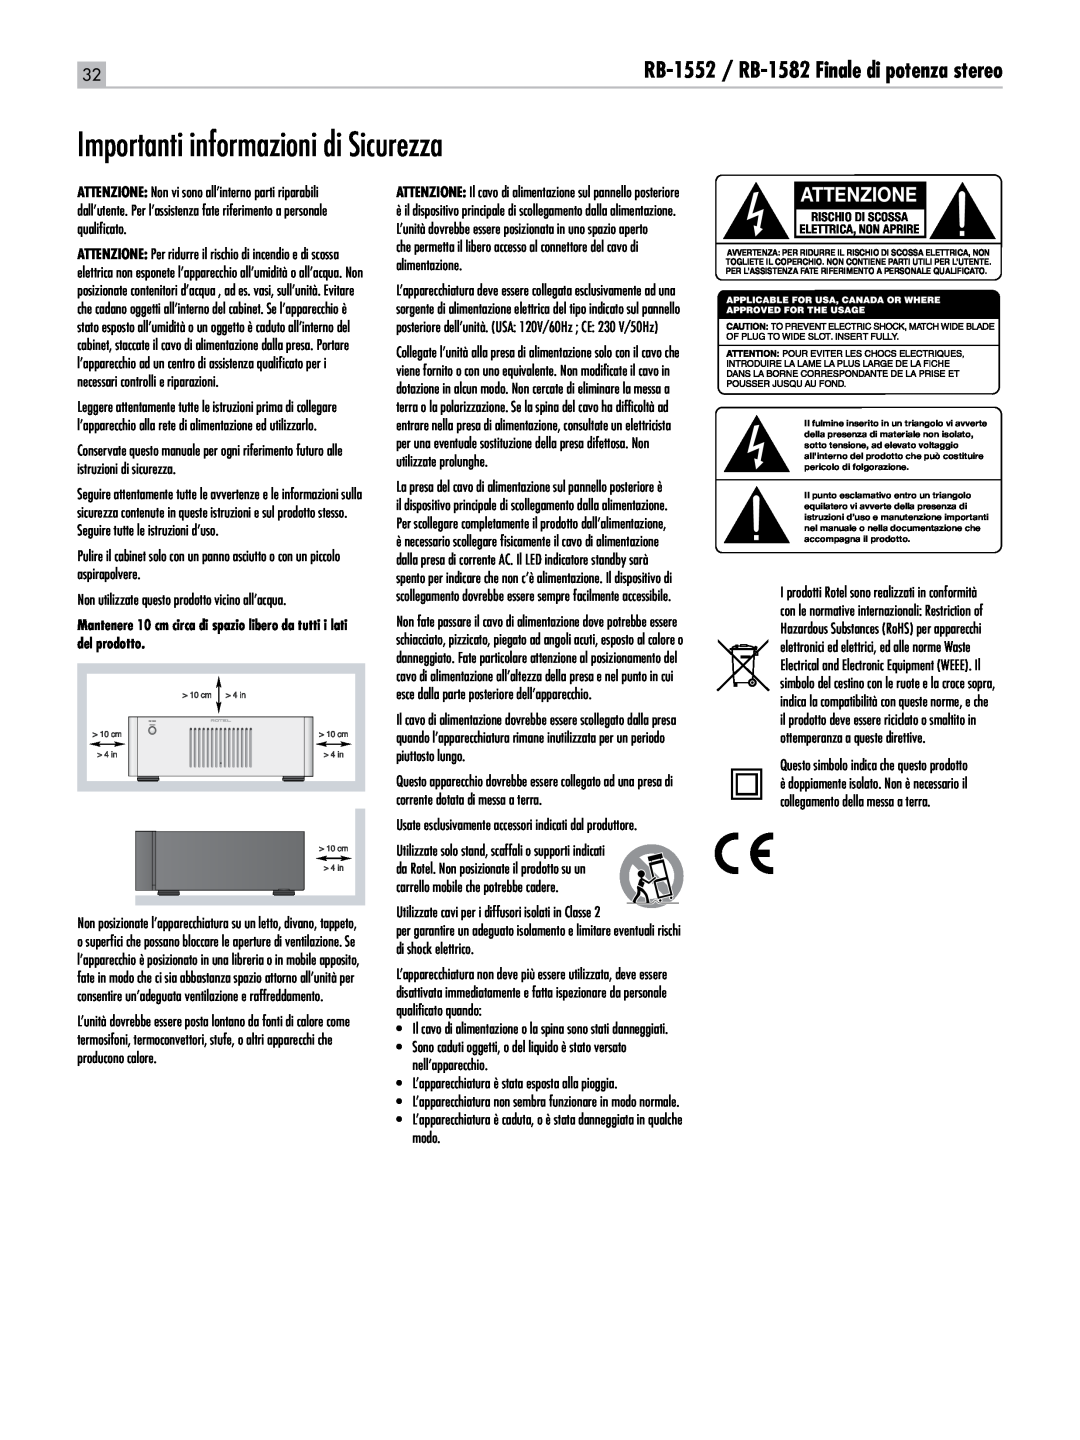 Rotel owner manual Importanti informazioni di Sicurezza, Attenzione, RB-1552 / RB-1582Finale di potenza stereo 